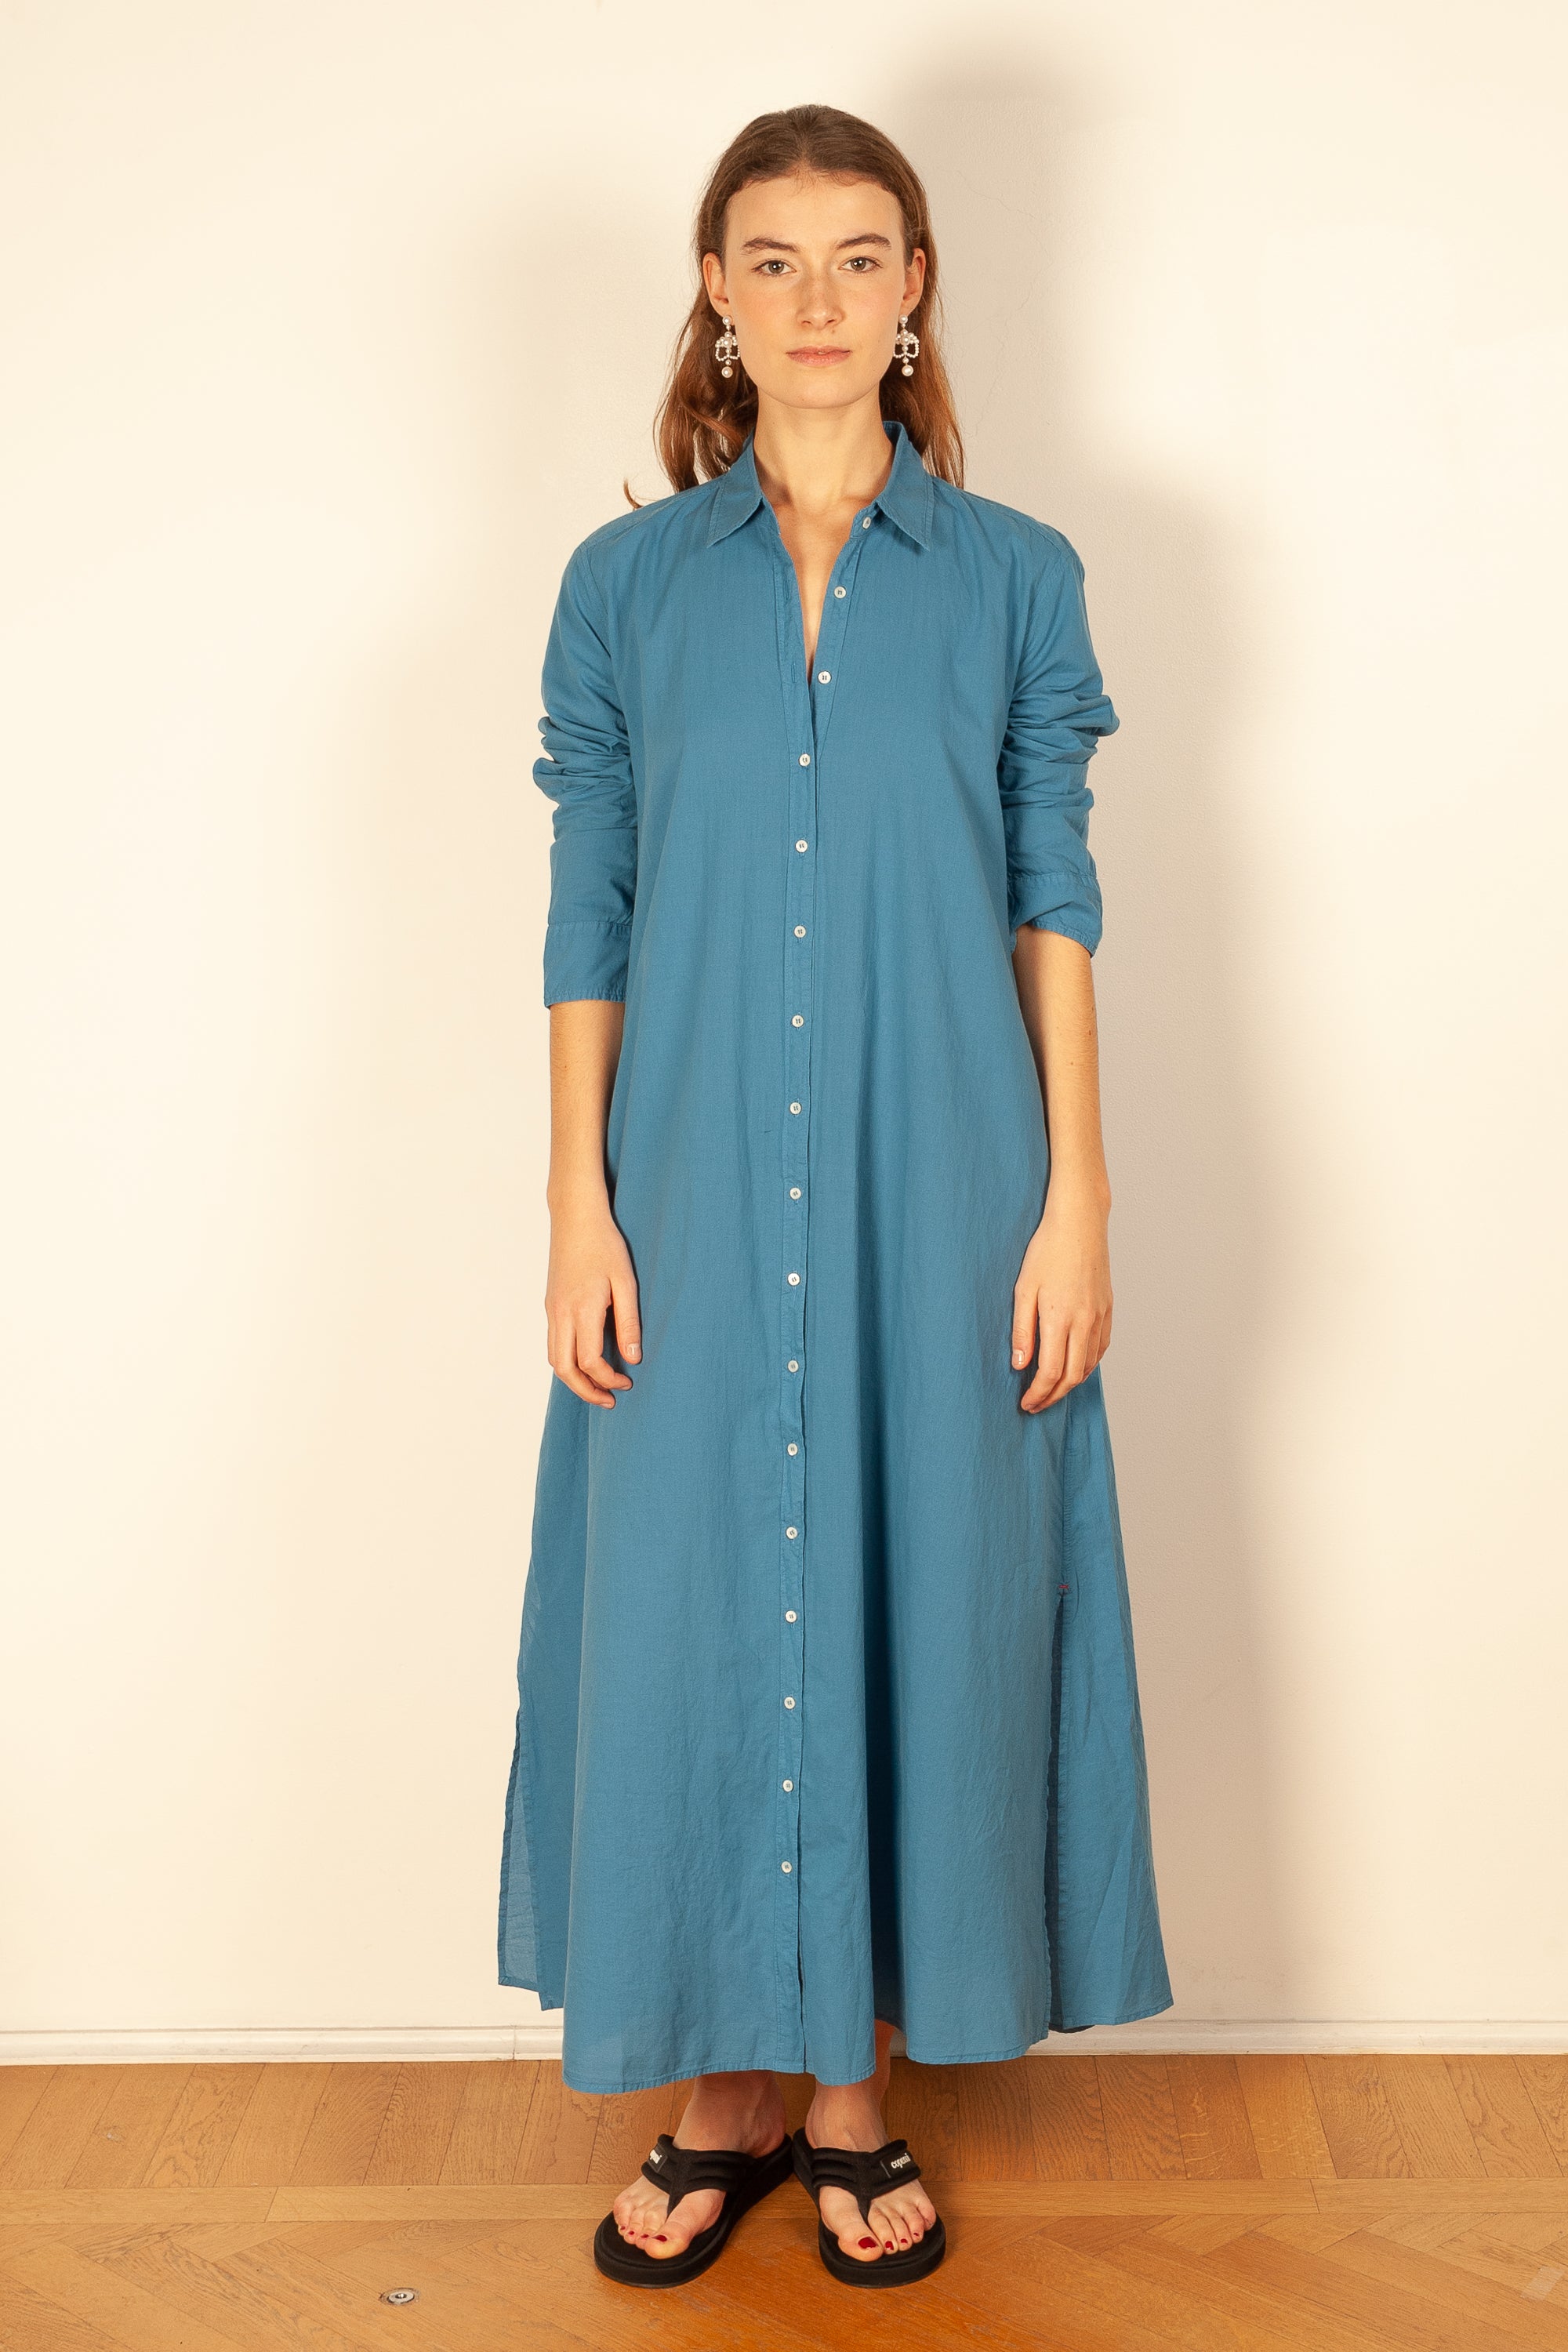 Boden Womens US Size 6 UK 10 Denim Shirt Dress Blue Button Front